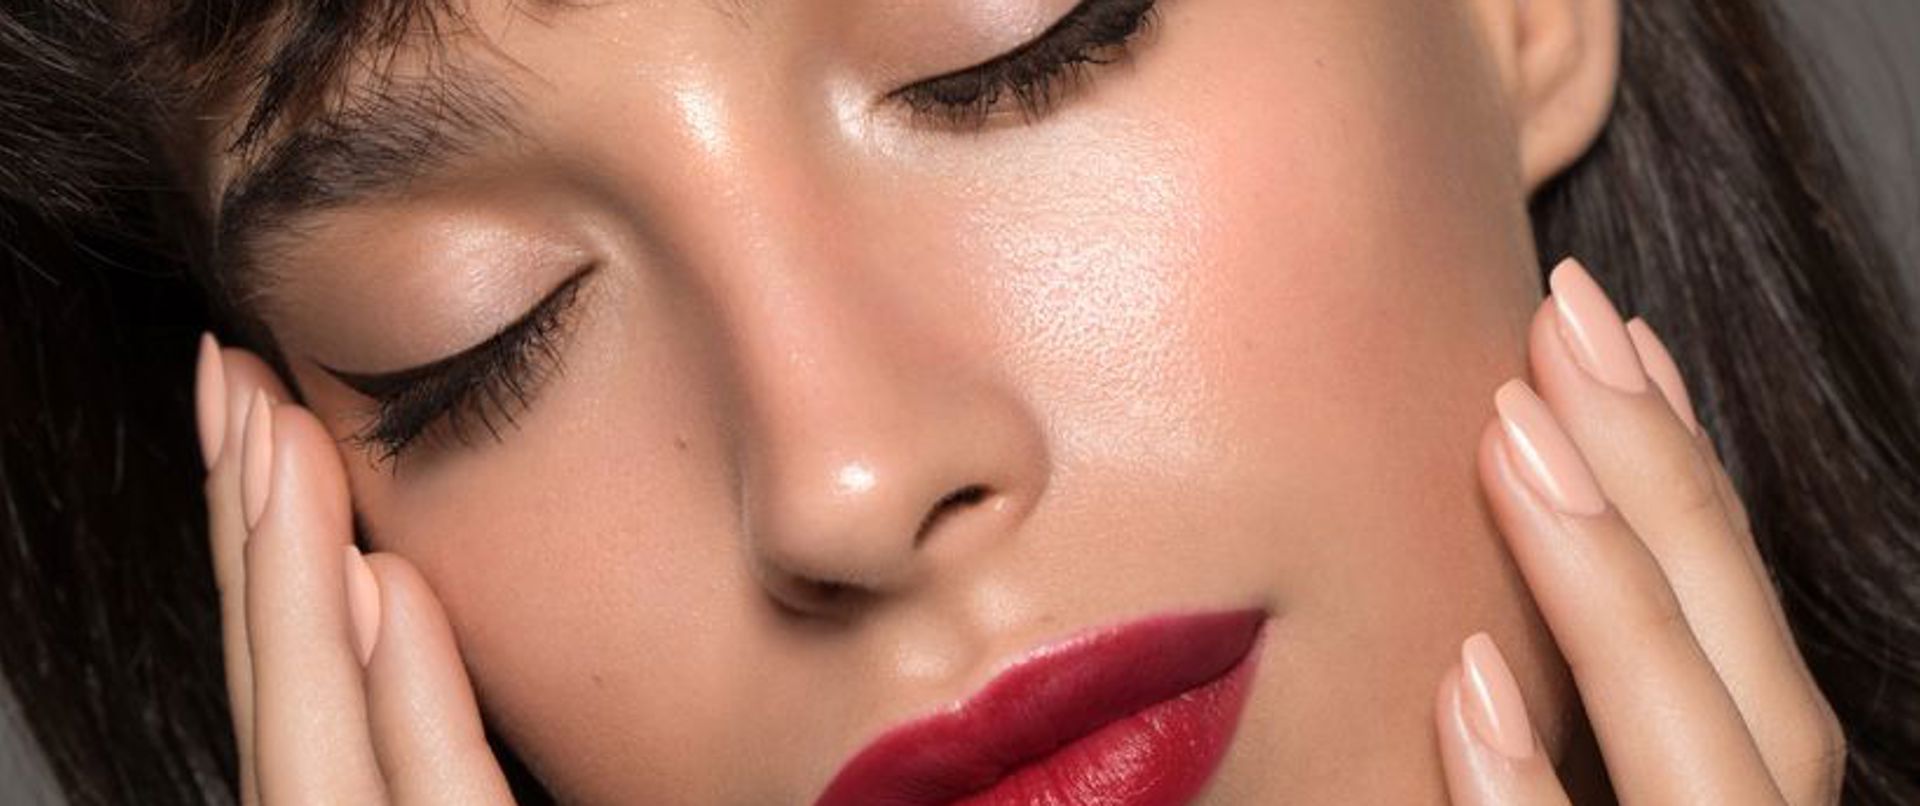 Daha siyah ve çekici: Jel Eyeliner Nasıl Sürülür?